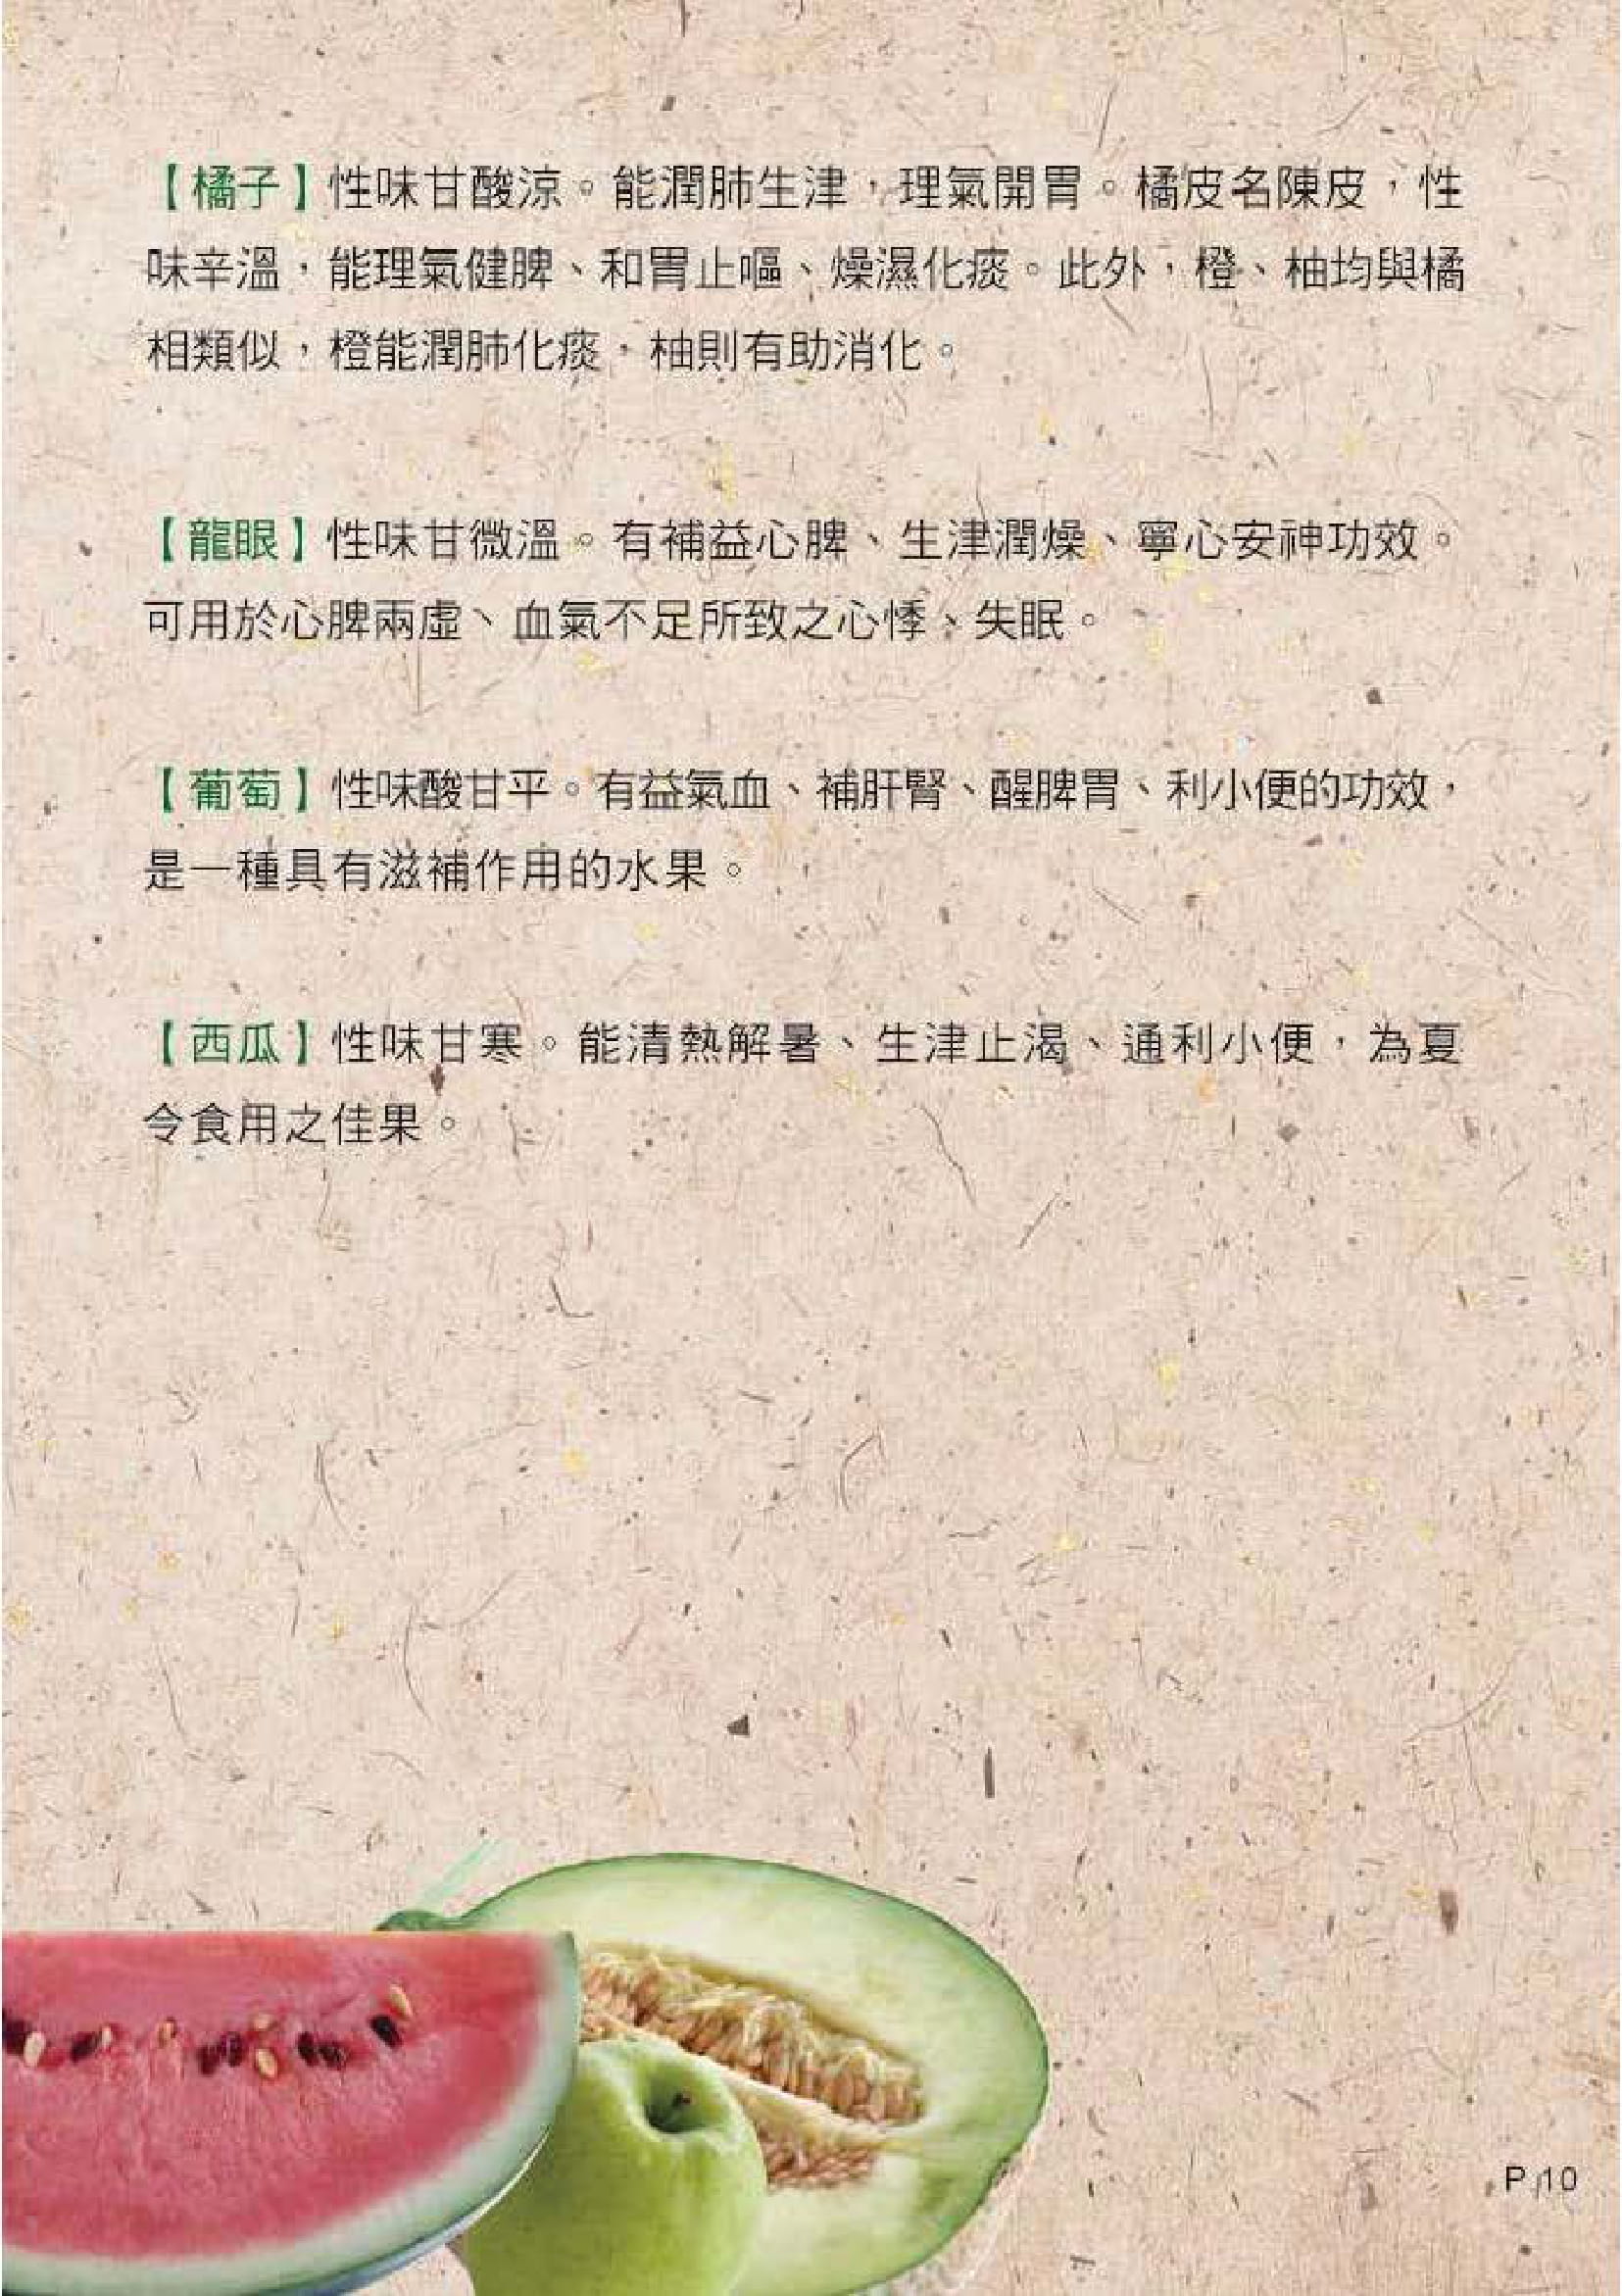 此圖片展示《中醫飲食養生 - 五穀與蔬果》刊物的第10頁